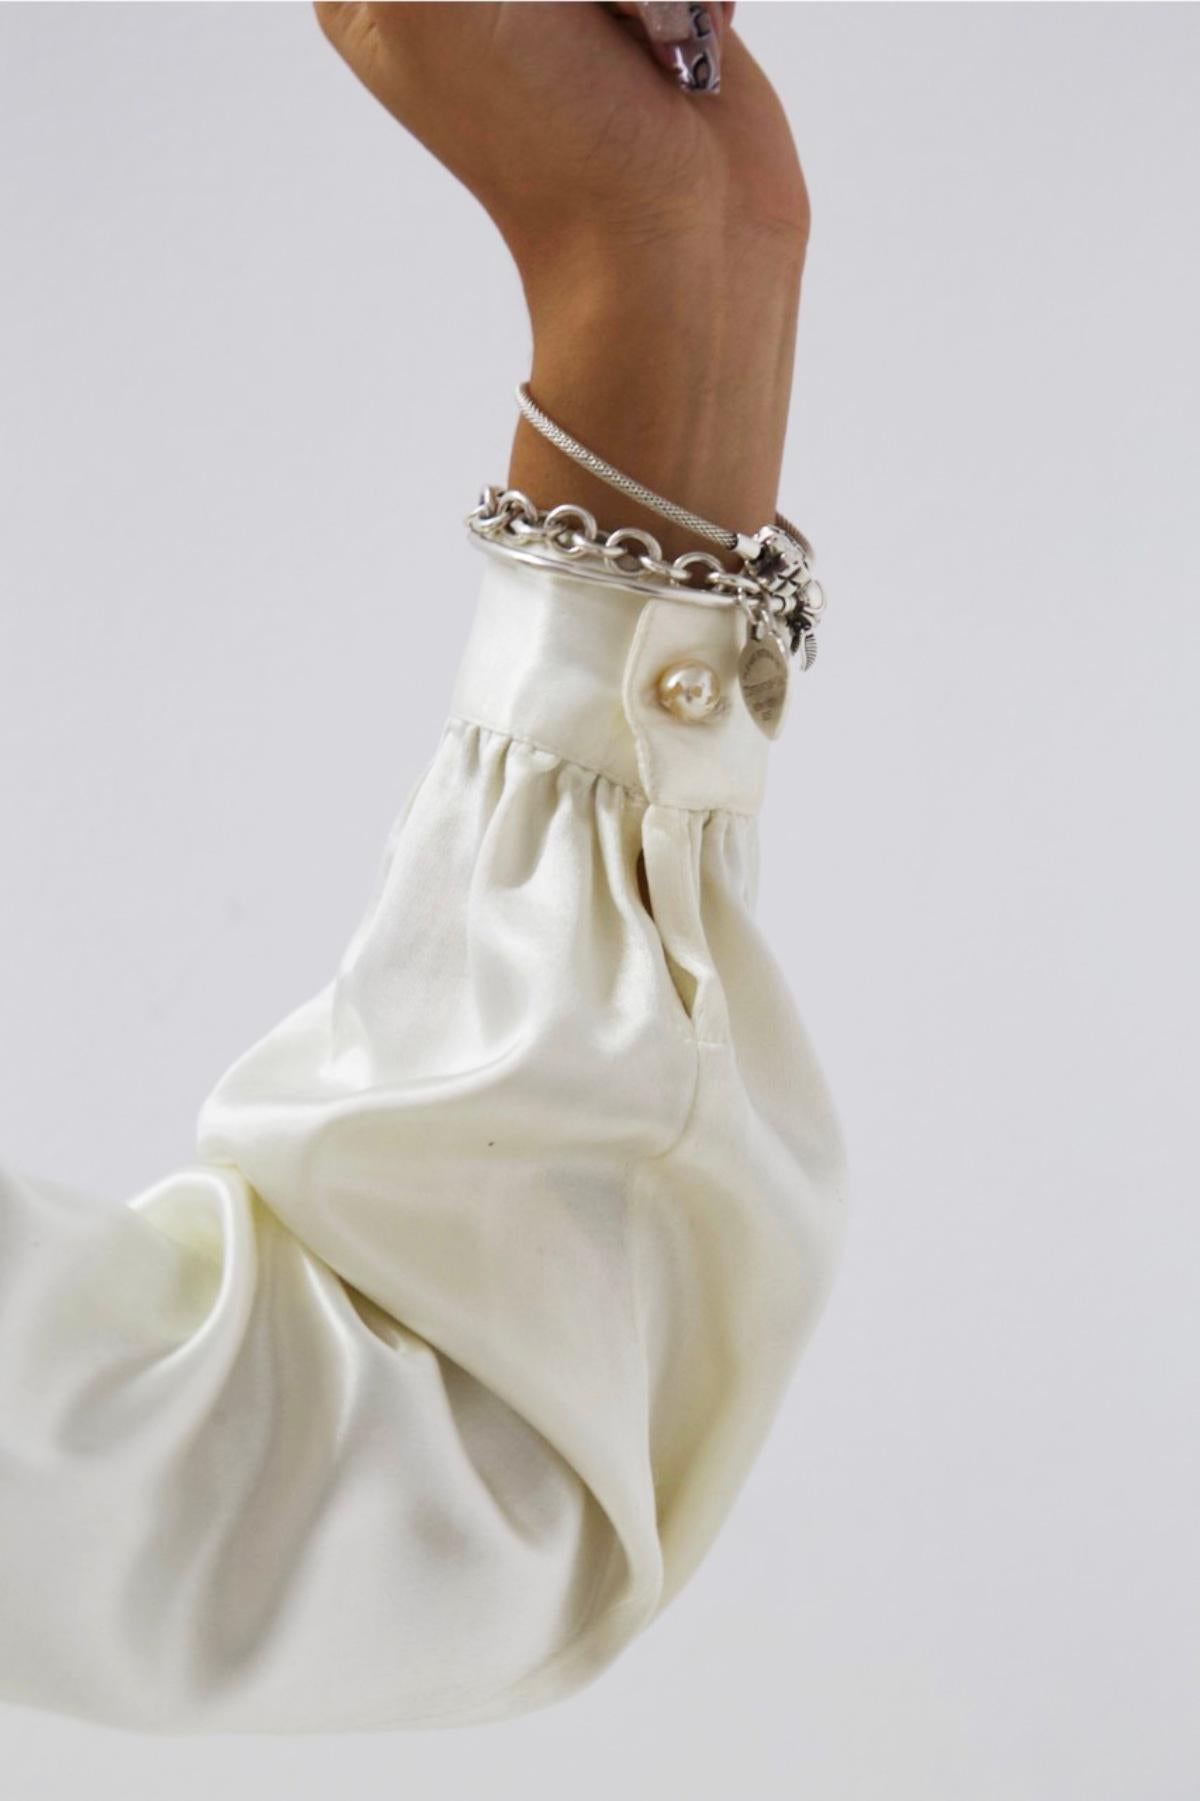 Splendide chemise blanche brillante conçue par Krizia dans les années 1980, belle fabrication italienne.
ÉTIQUETTE ORIGINALE.
La chemise est entièrement réalisée en viscose blanche brillante, très élégante.
Les manches sont longues avec une